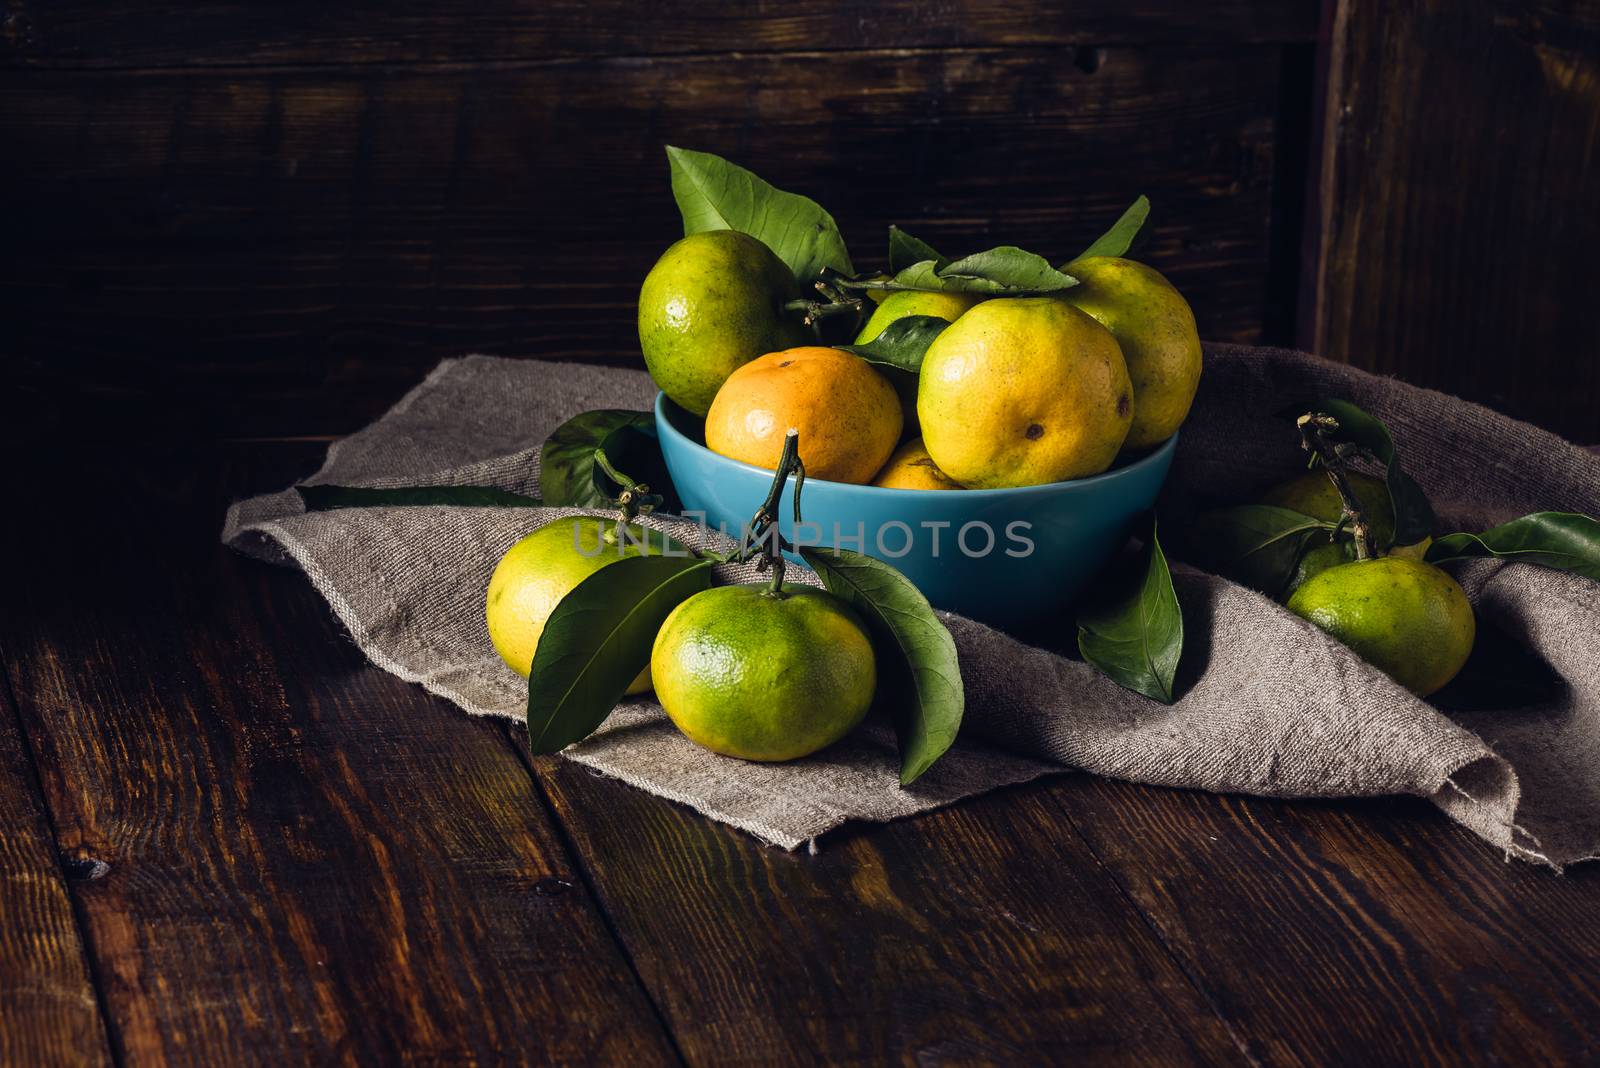 Yellow-green Tangerines Still Life by Seva_blsv